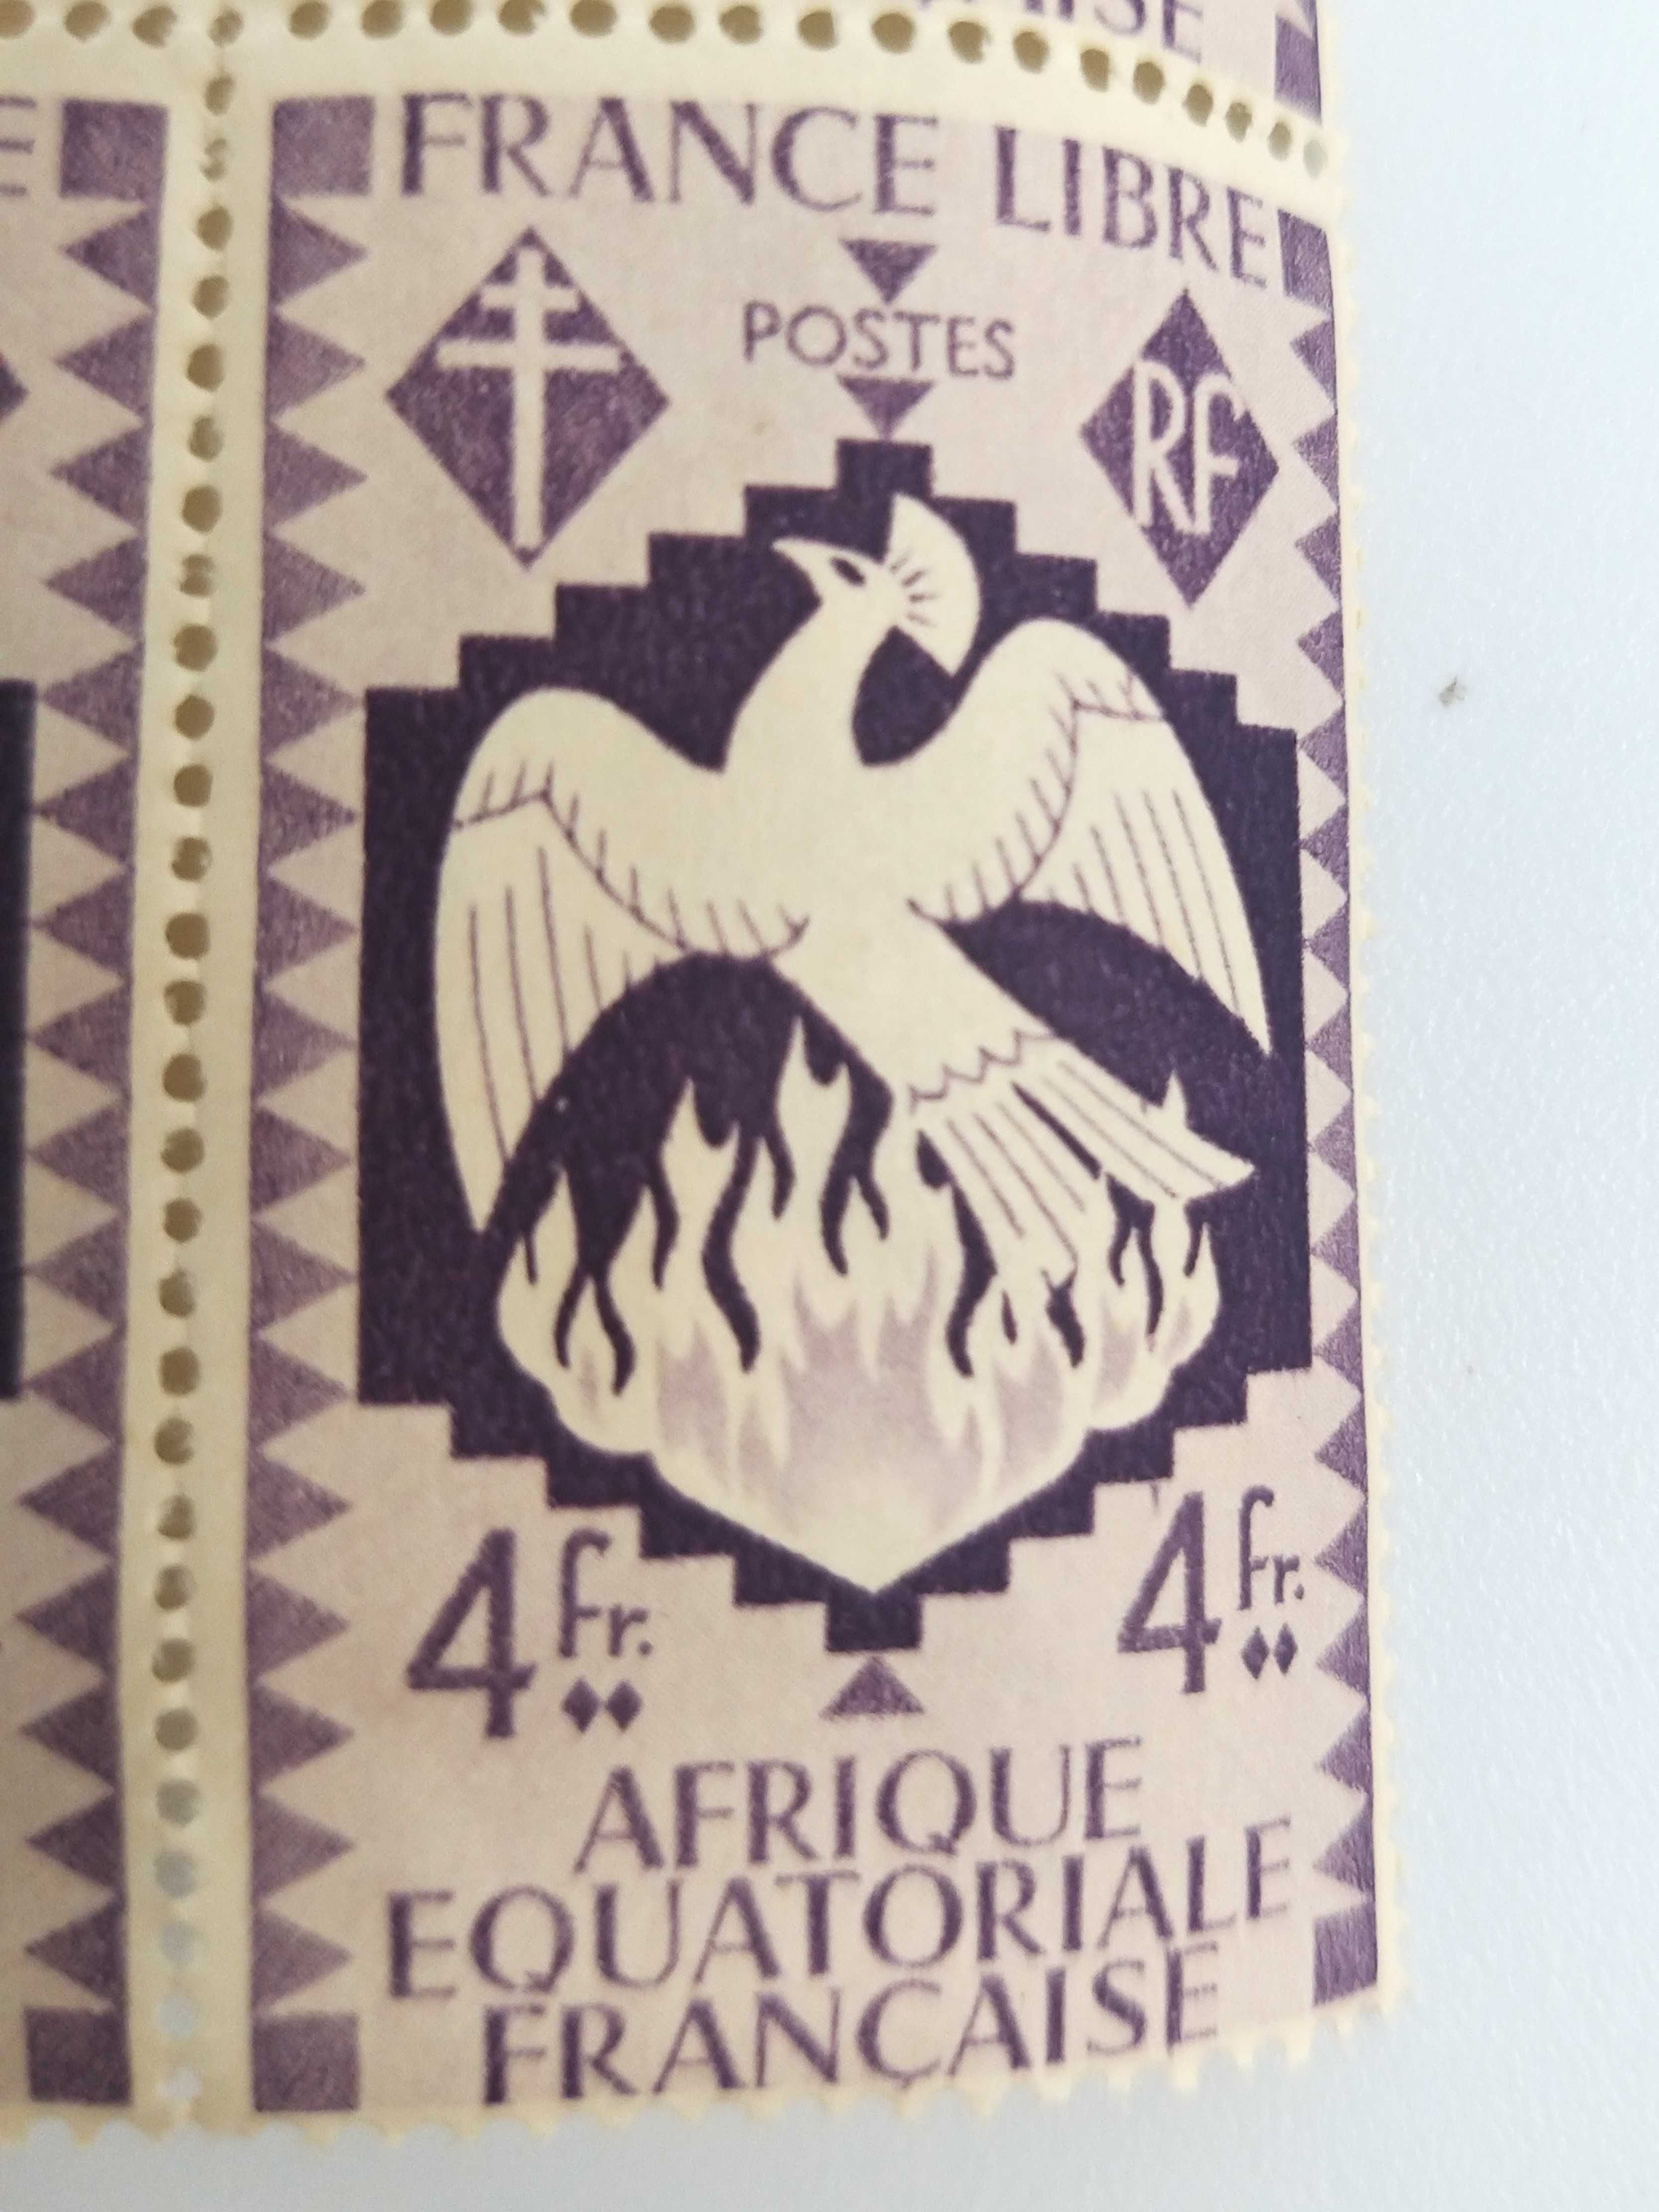 Znaczek kolonialny Wolnych Francuzów Afryka Równikowa 1941r E. Dulac